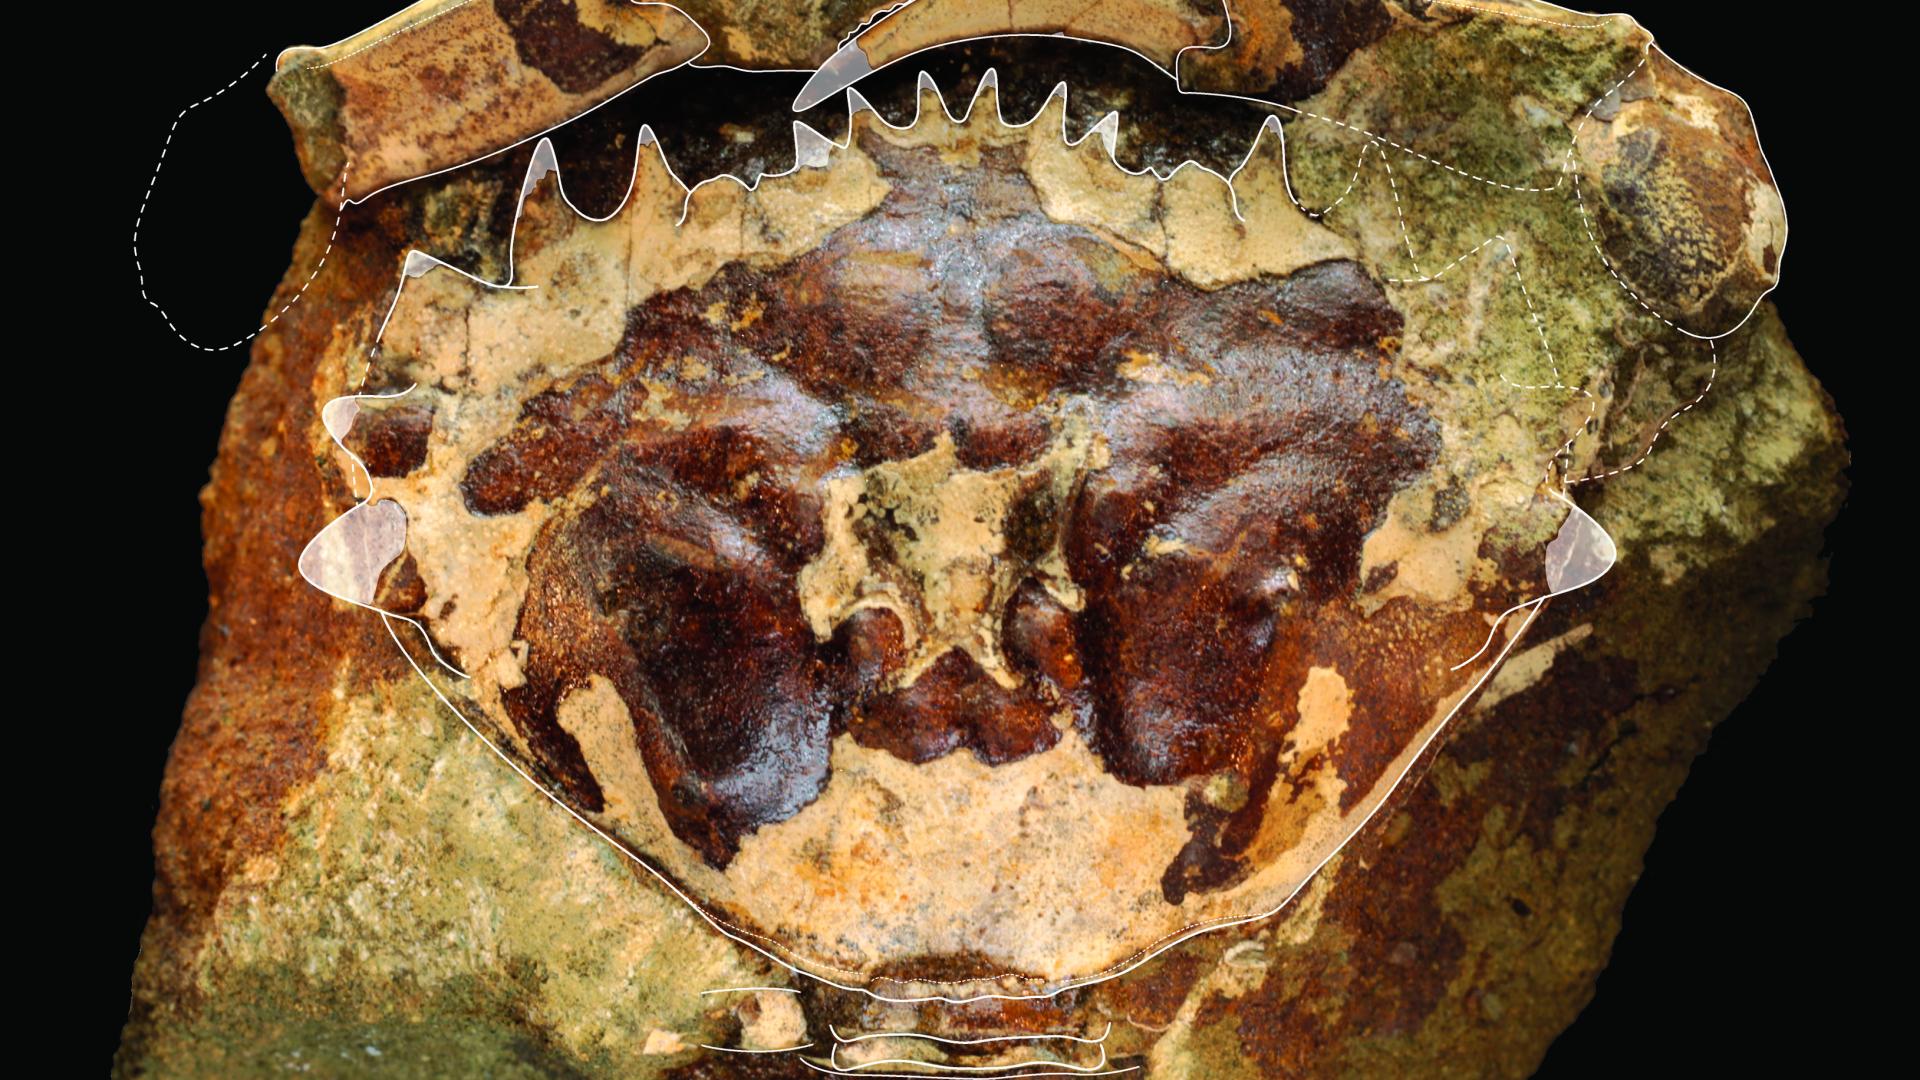 Cangrejo fósil de Loanco, cf. Minohellenus araucanus (Phillipi, 1887), uno de los materiales bajo este estudio. El ejemplar tendría cerca de 45 millones de años.